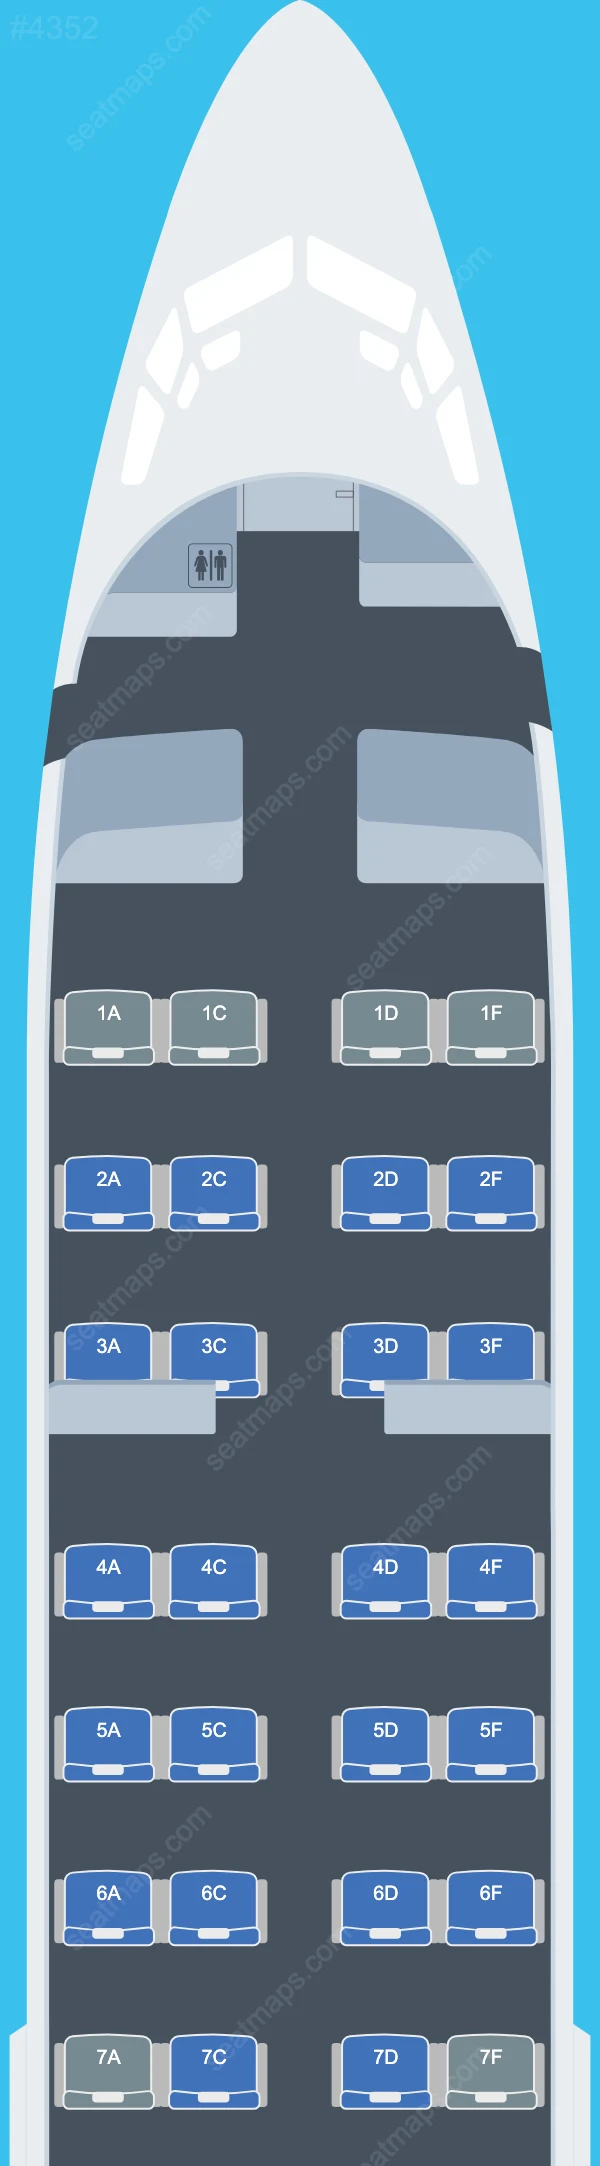 iAero Airways Boeing 737 Plan de Salle 737-400 V.3